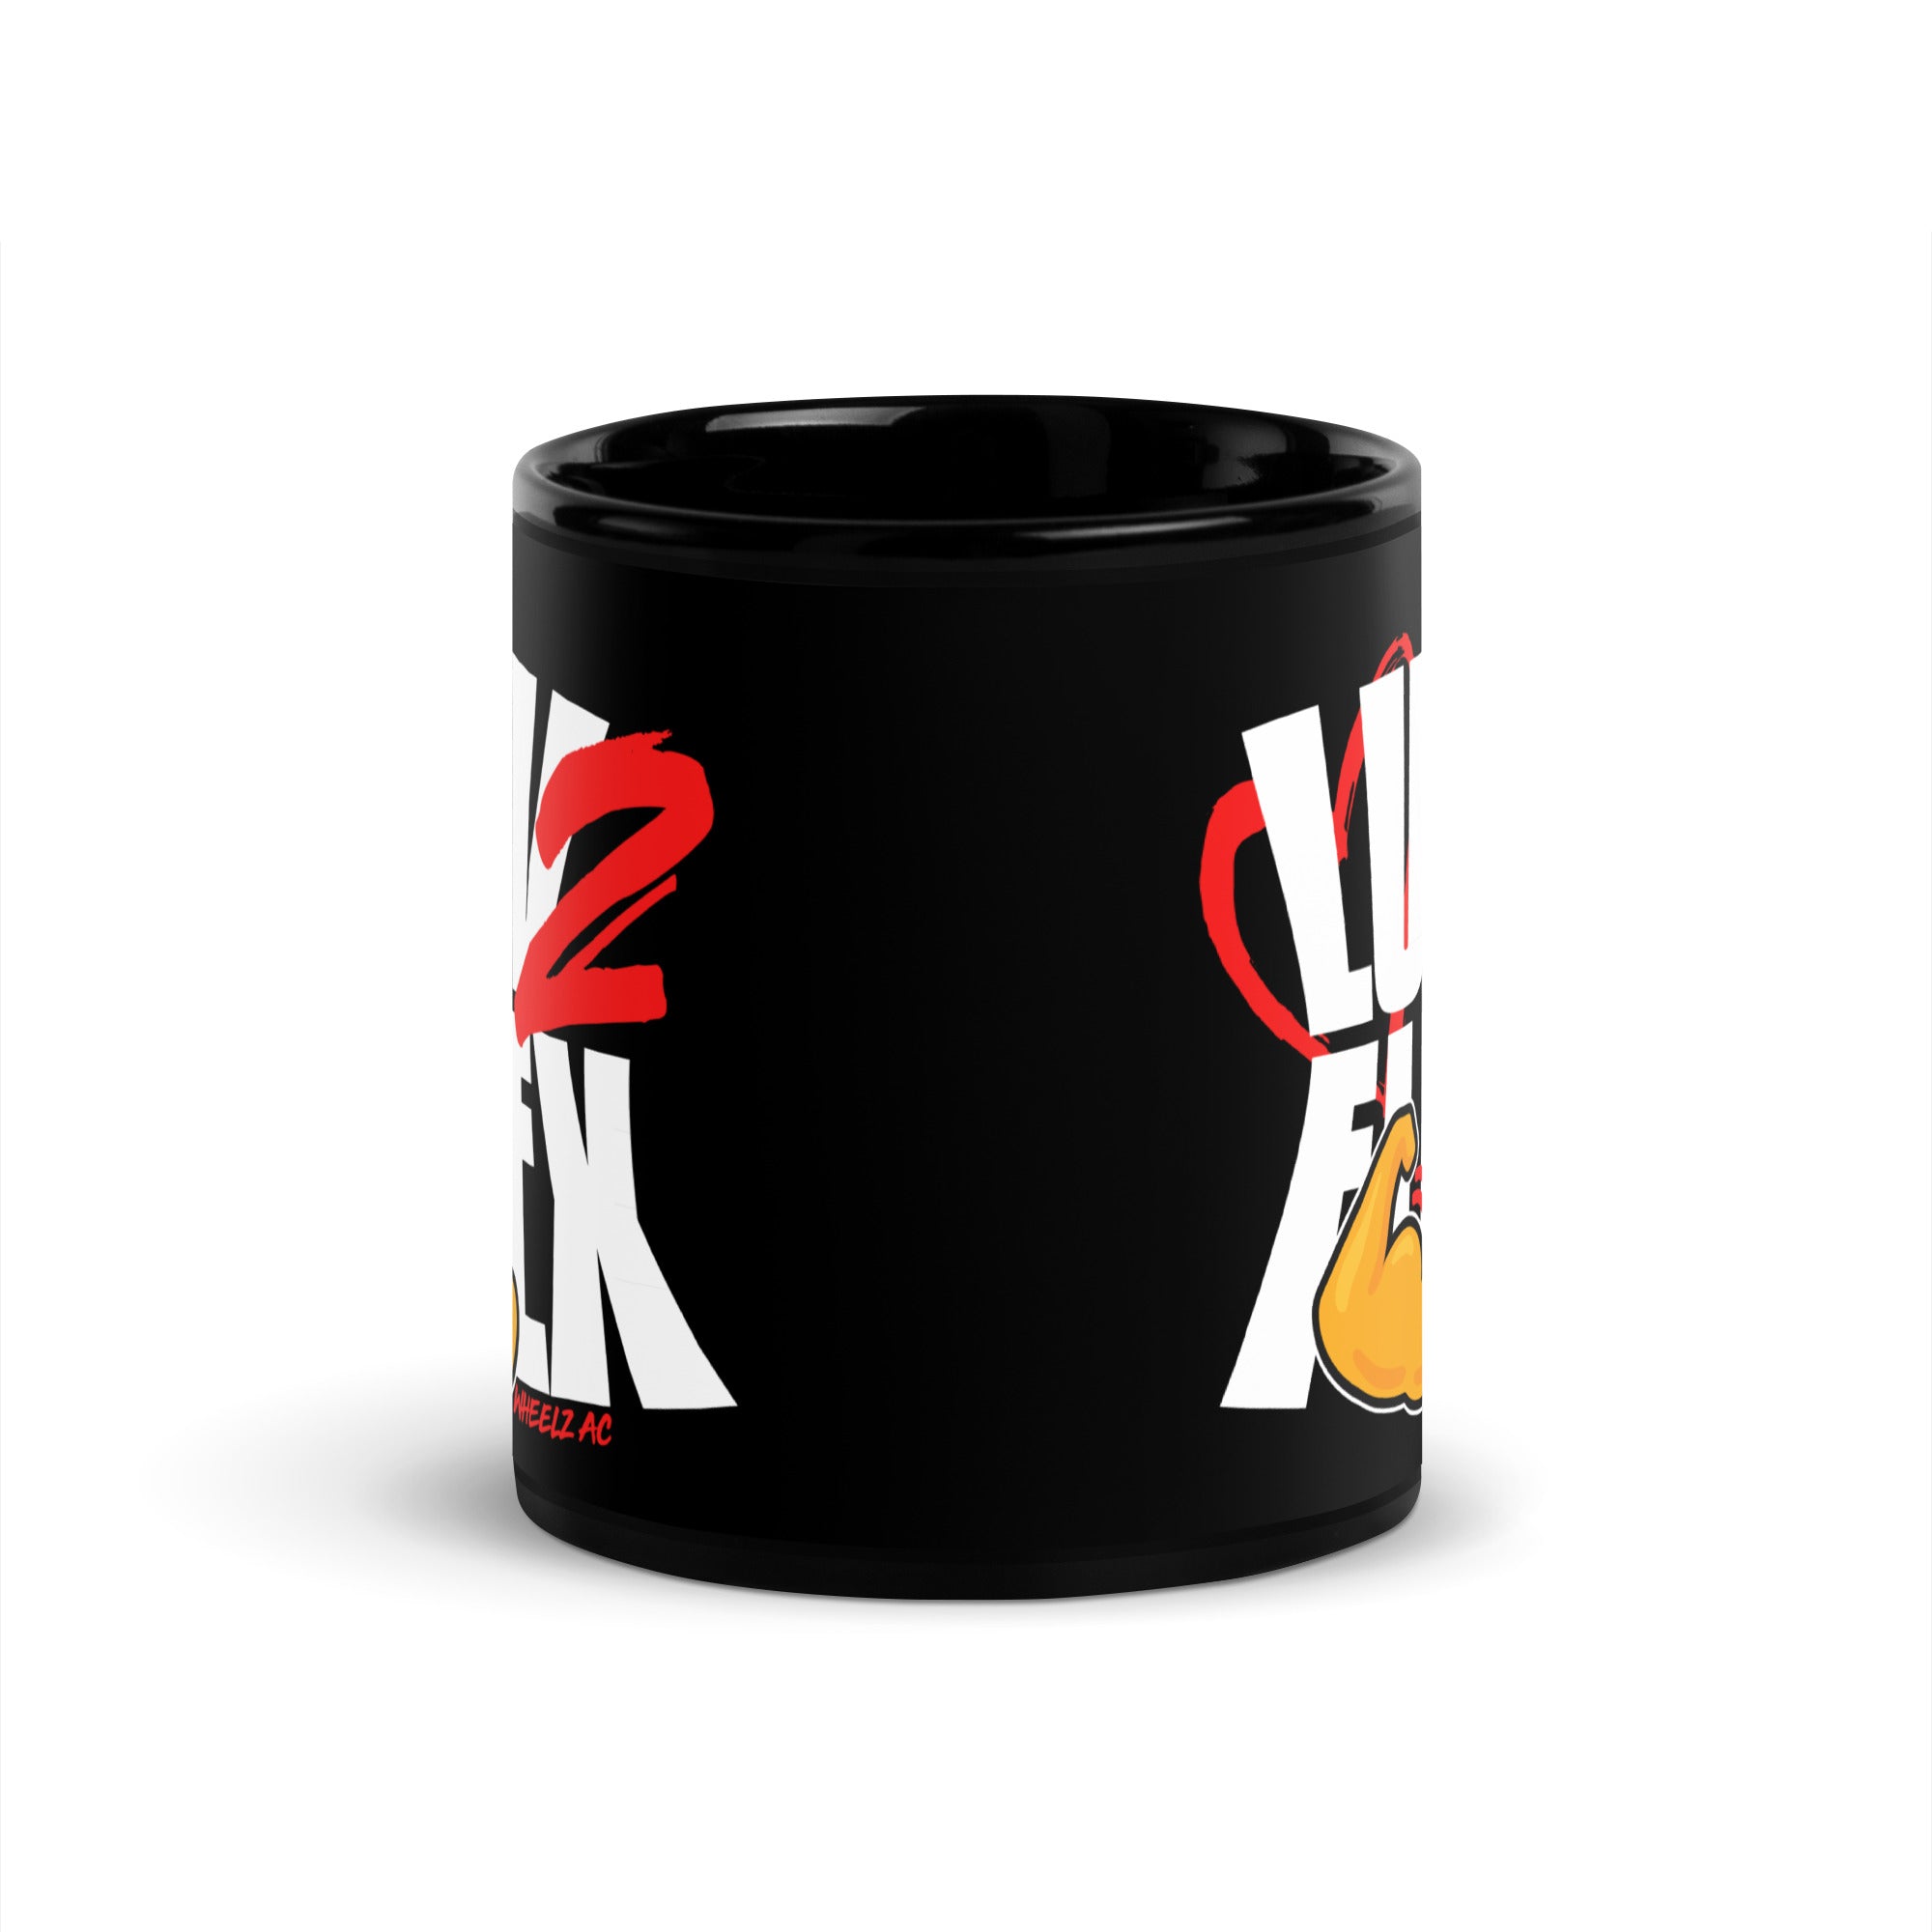 Luv 2 Flex Black Glossy Mug